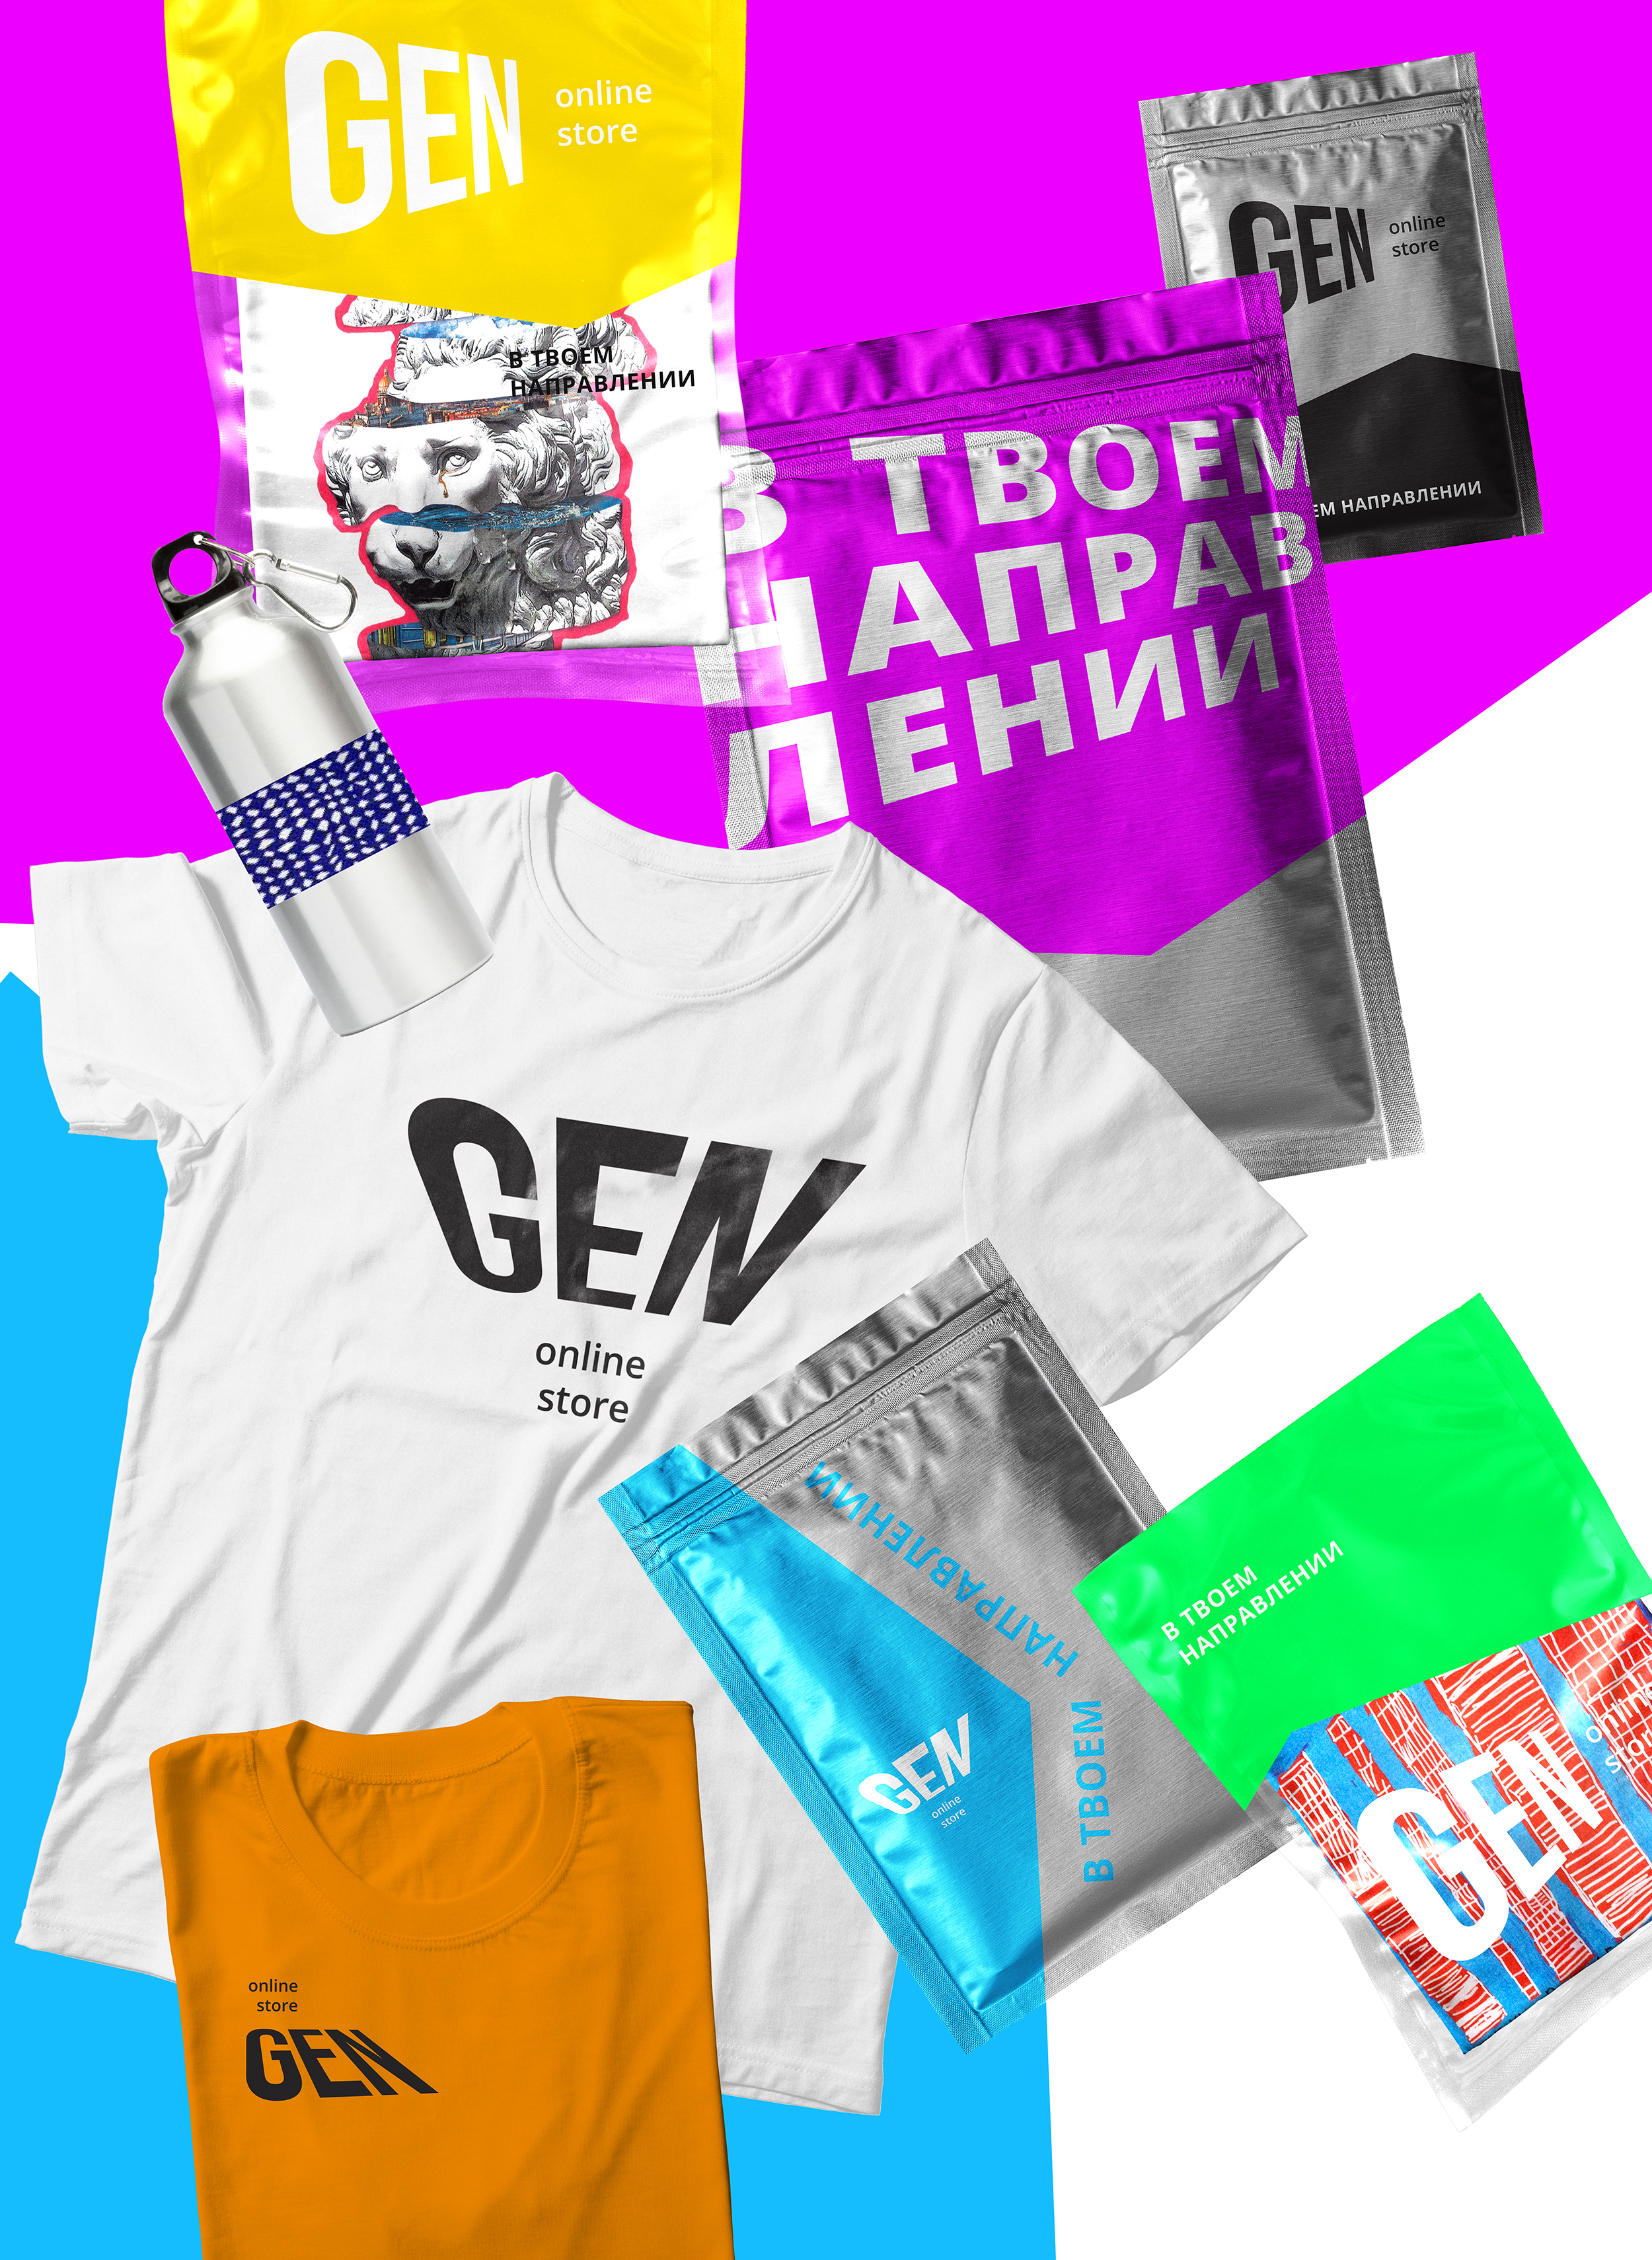 Дизайн упаковки онлайн-магазина GEN